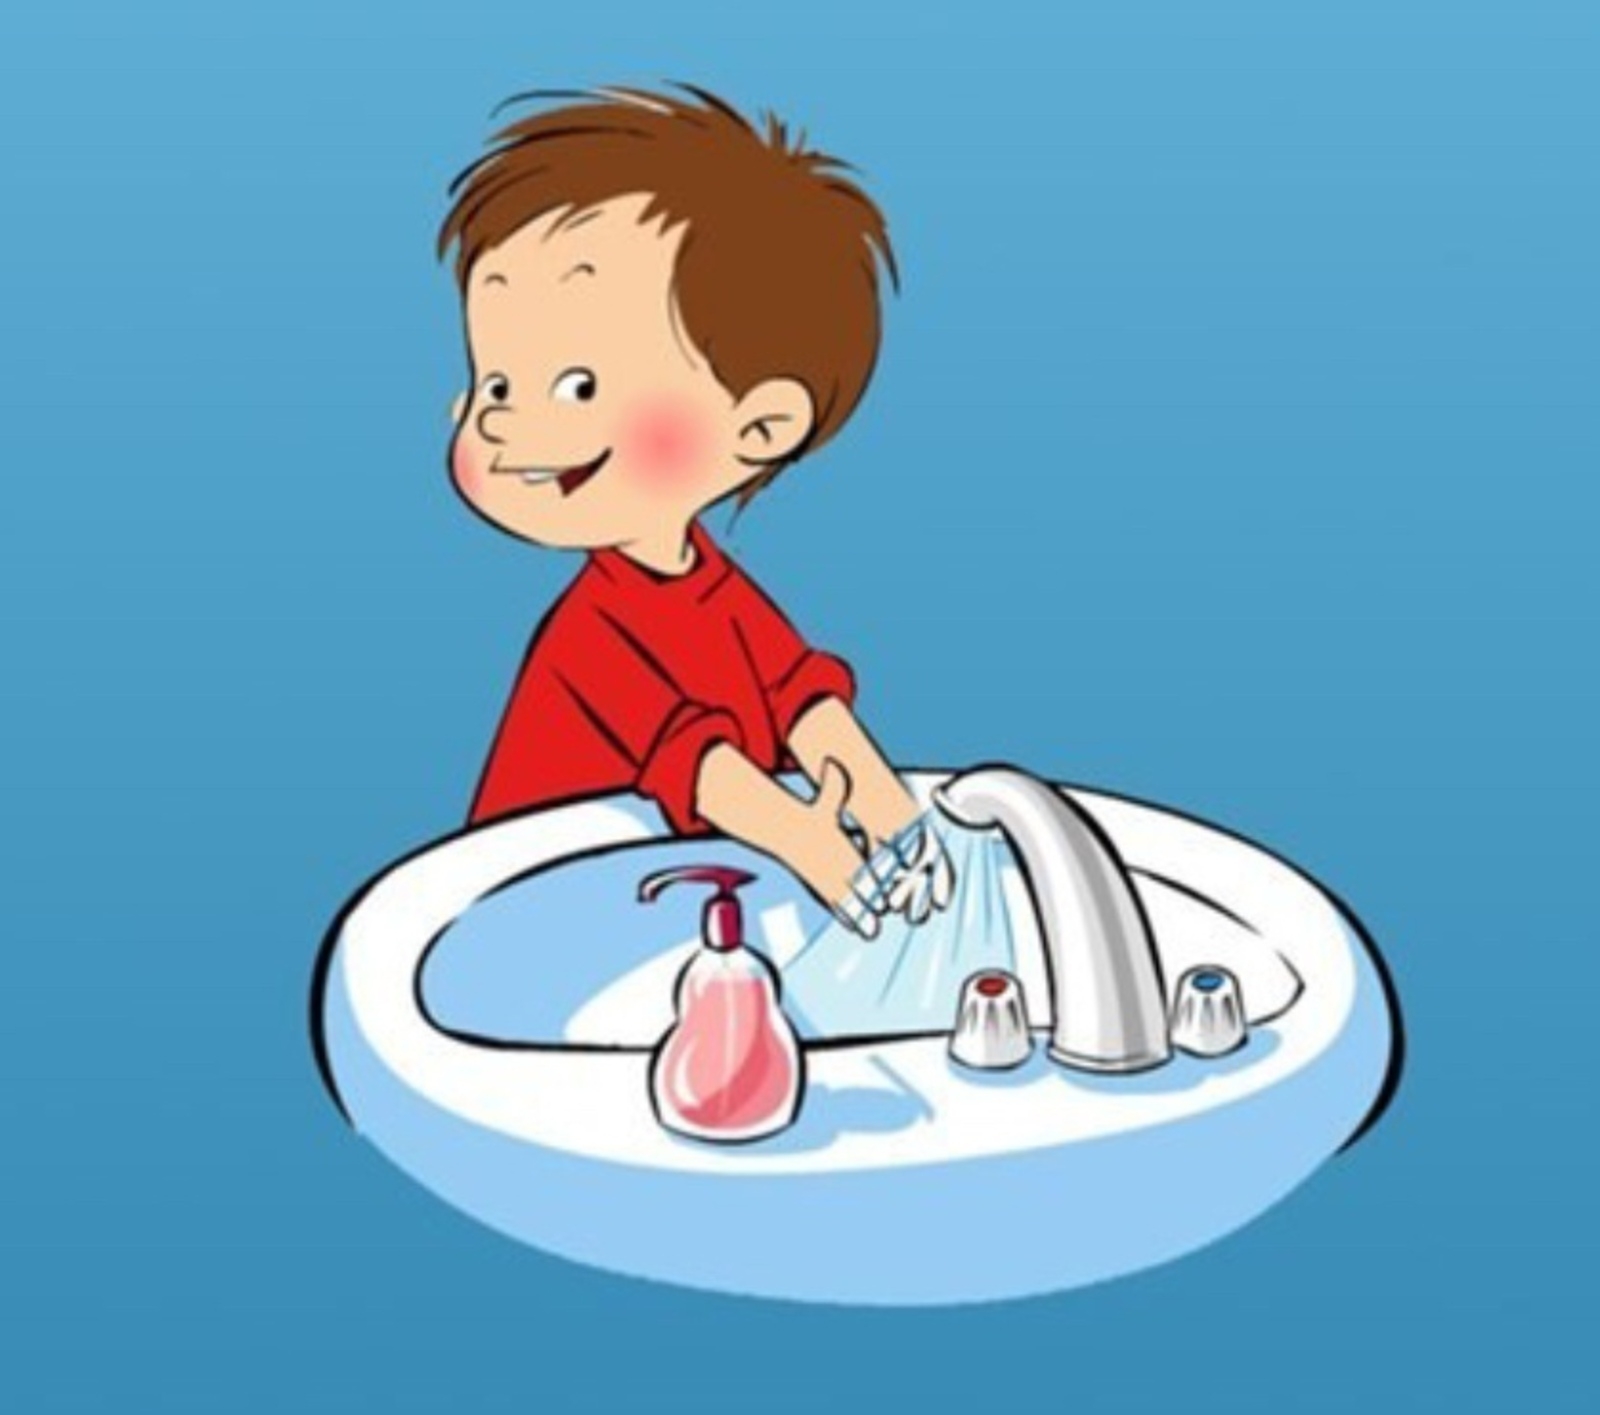 Гигиенические процедуры ребенка. Личная гигиена. Гигиена для детей. Соблюдение Лич гигиены. Соблюдение правил личной гигиены.